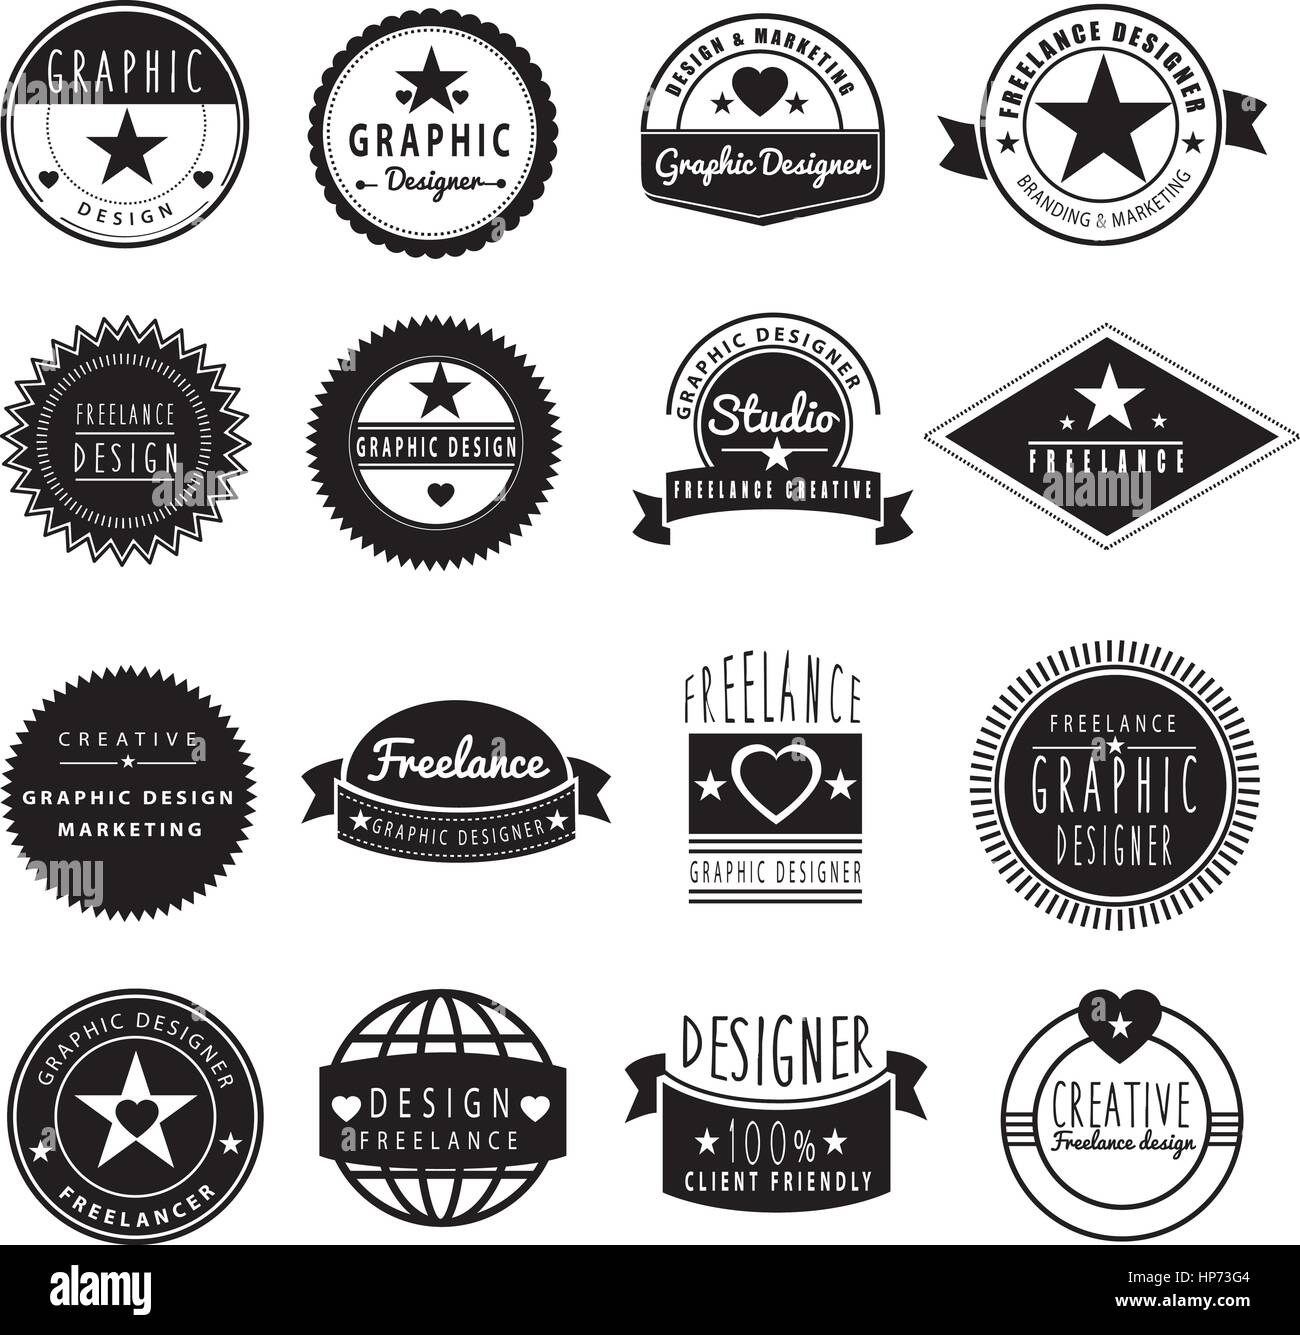 set of branding logos for freelance designer or graphic design studio Stock Vector